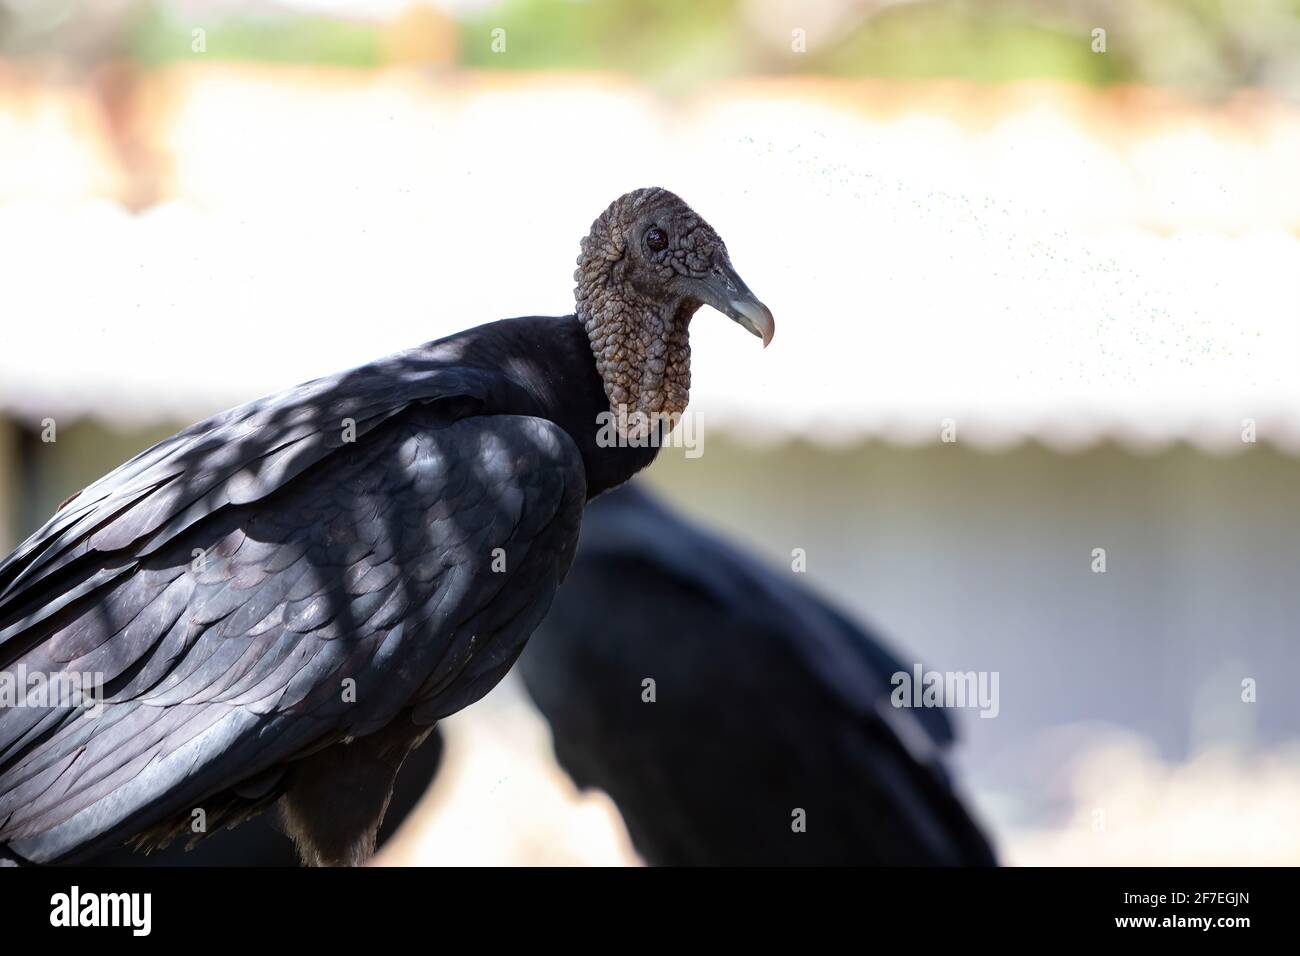 American black vulture of the species Coragyps atratus Stock Photo